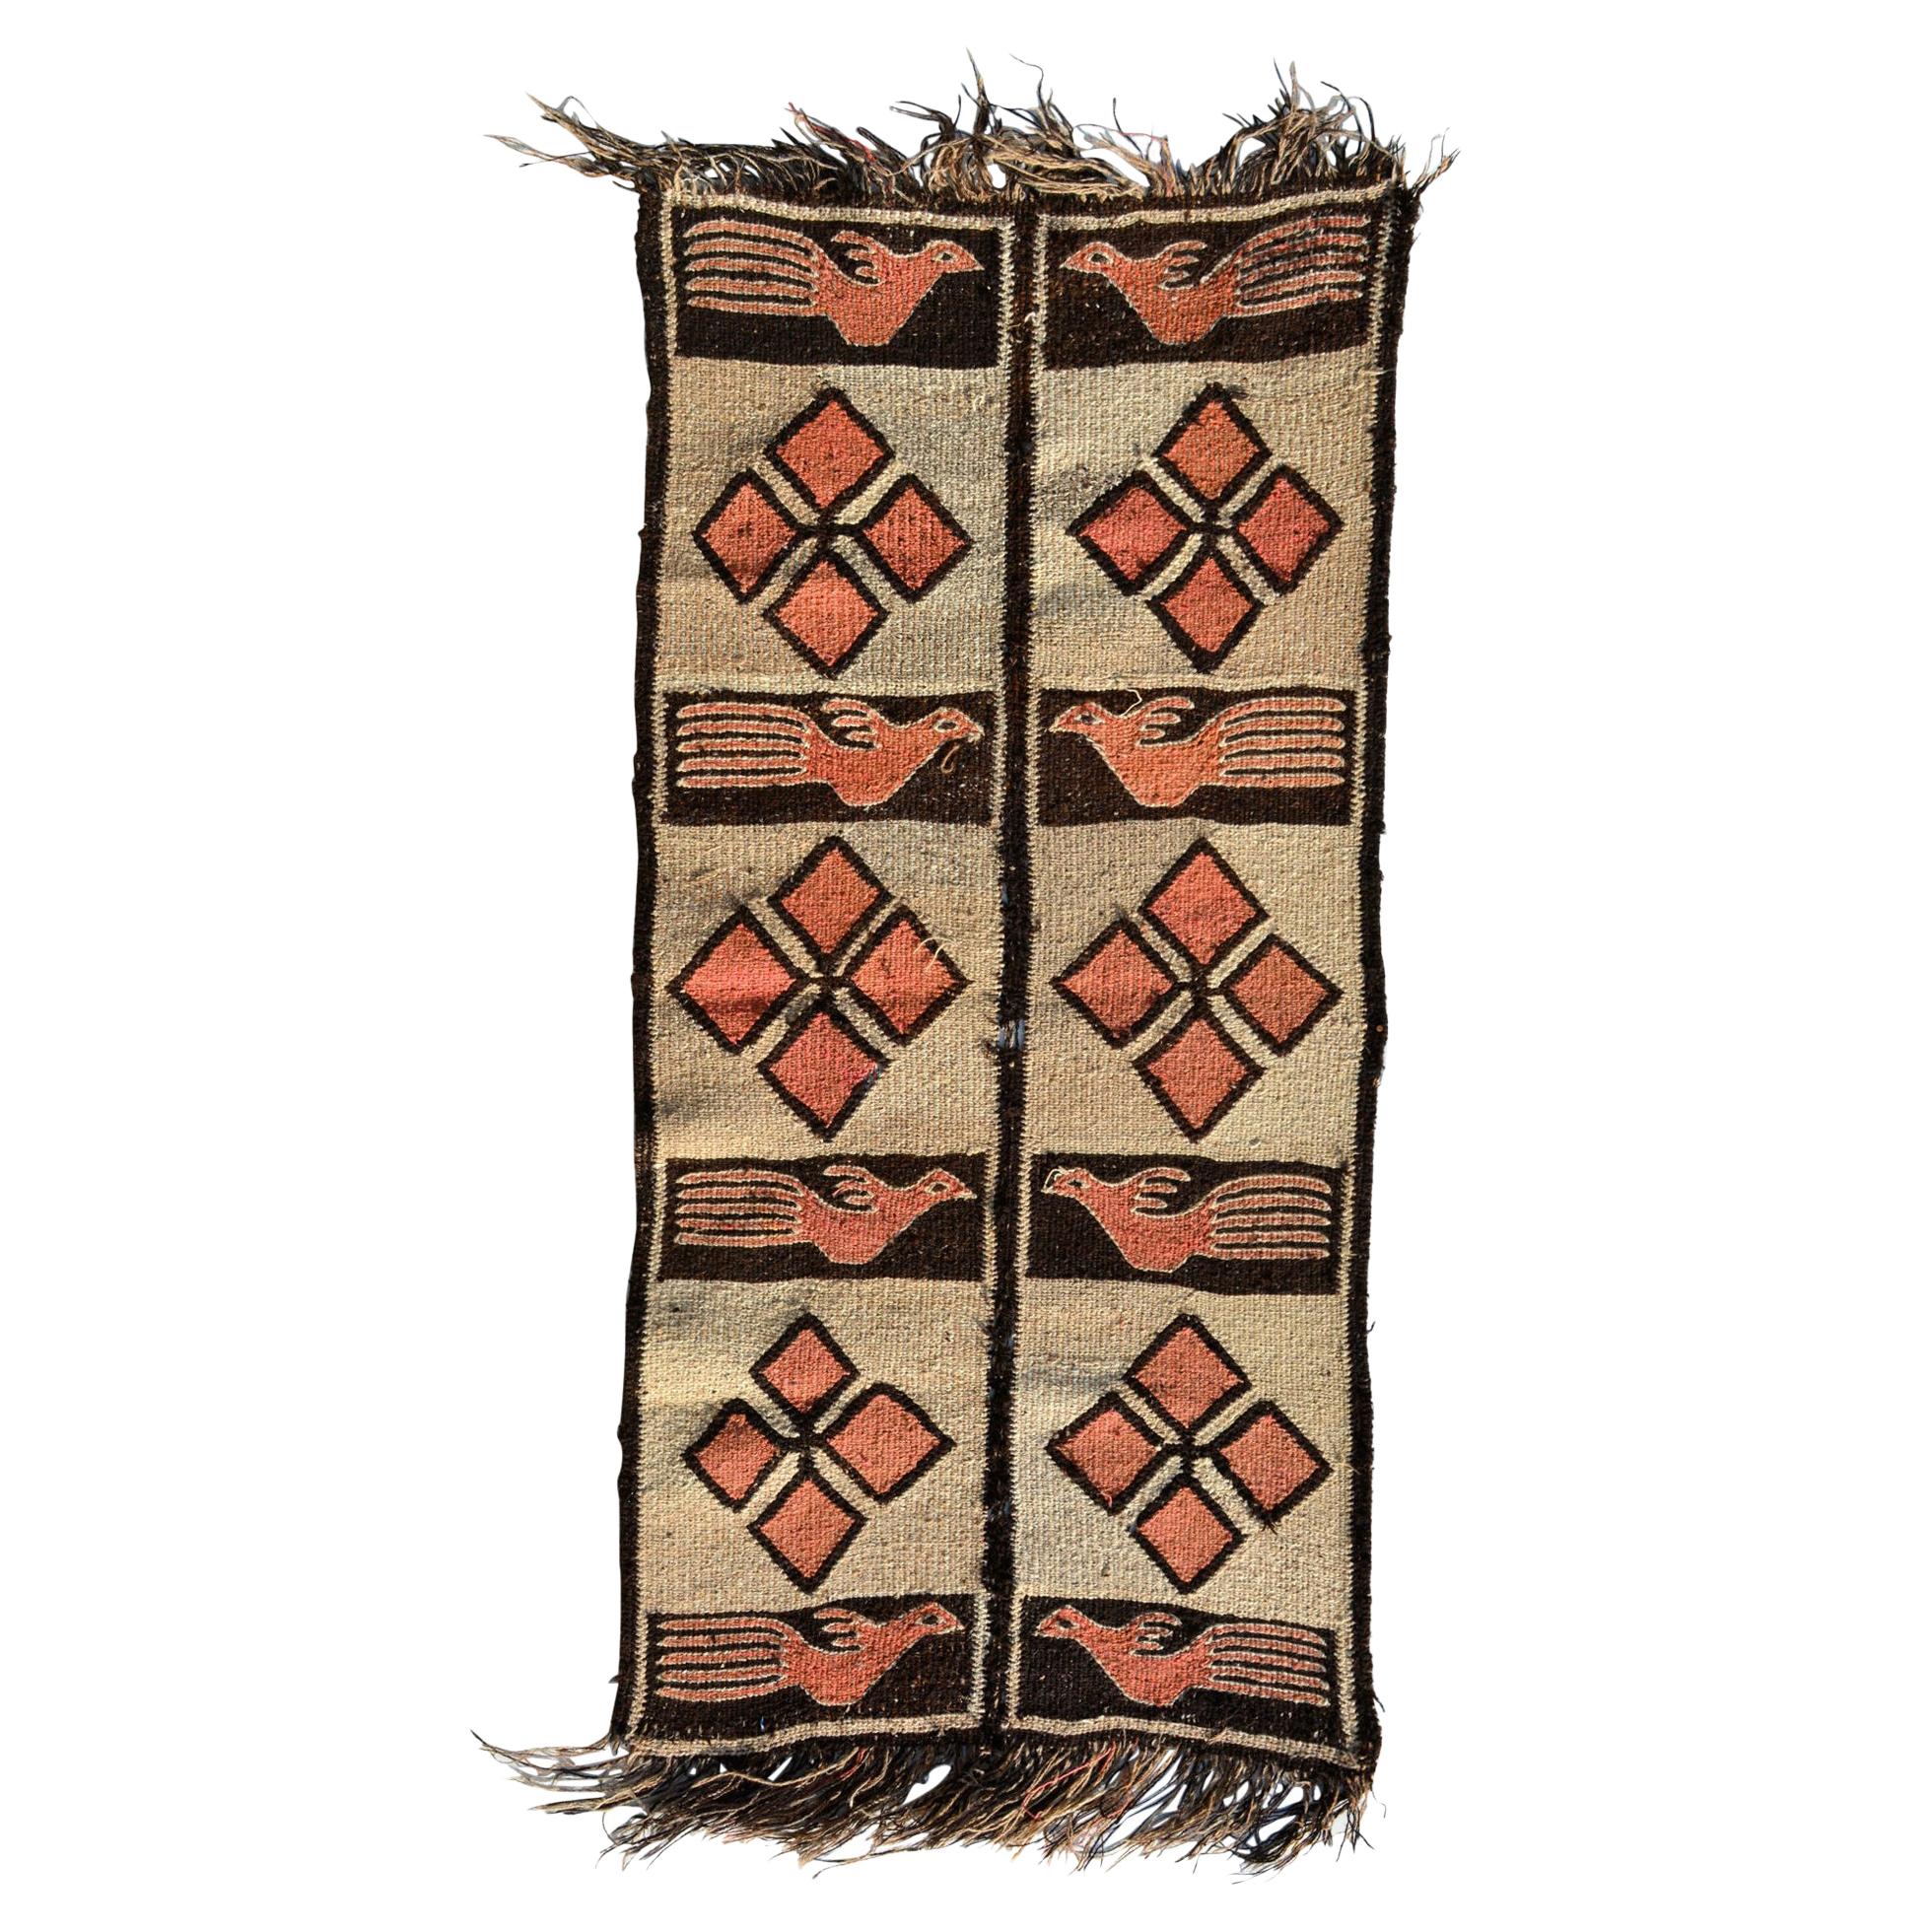 Peru Roadrunner Image Handwoven Warm Wool Tapestry Rug Runner 1940s Vintage